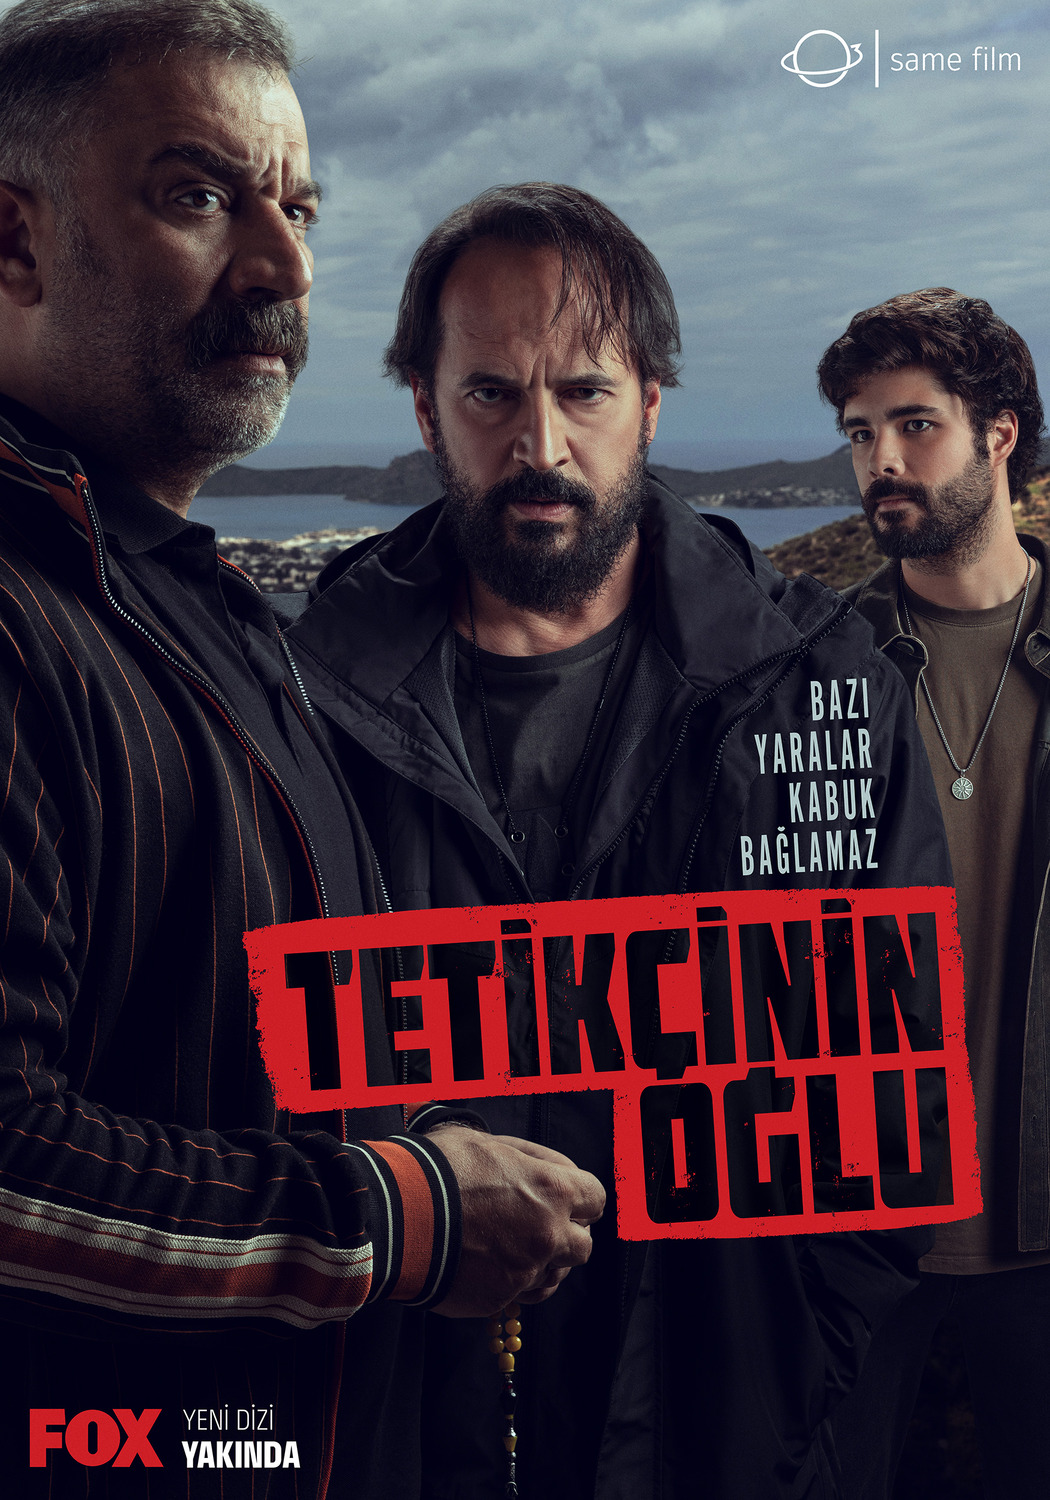 Extra Large TV Poster Image for Tetikçinin Oglu (#1 of 2)